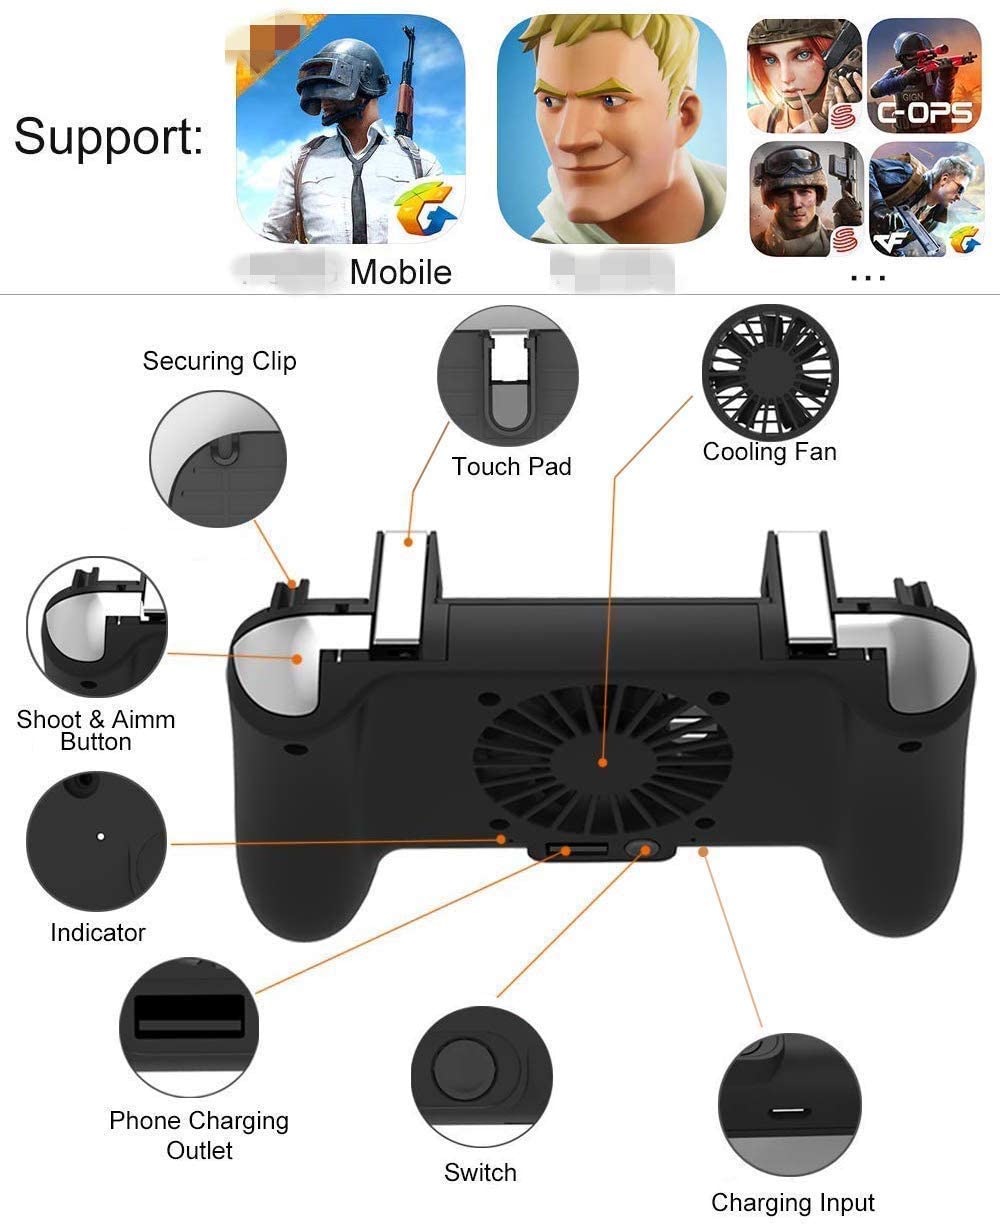 Mobile Game Controller [Upgrade Version] - e4cents